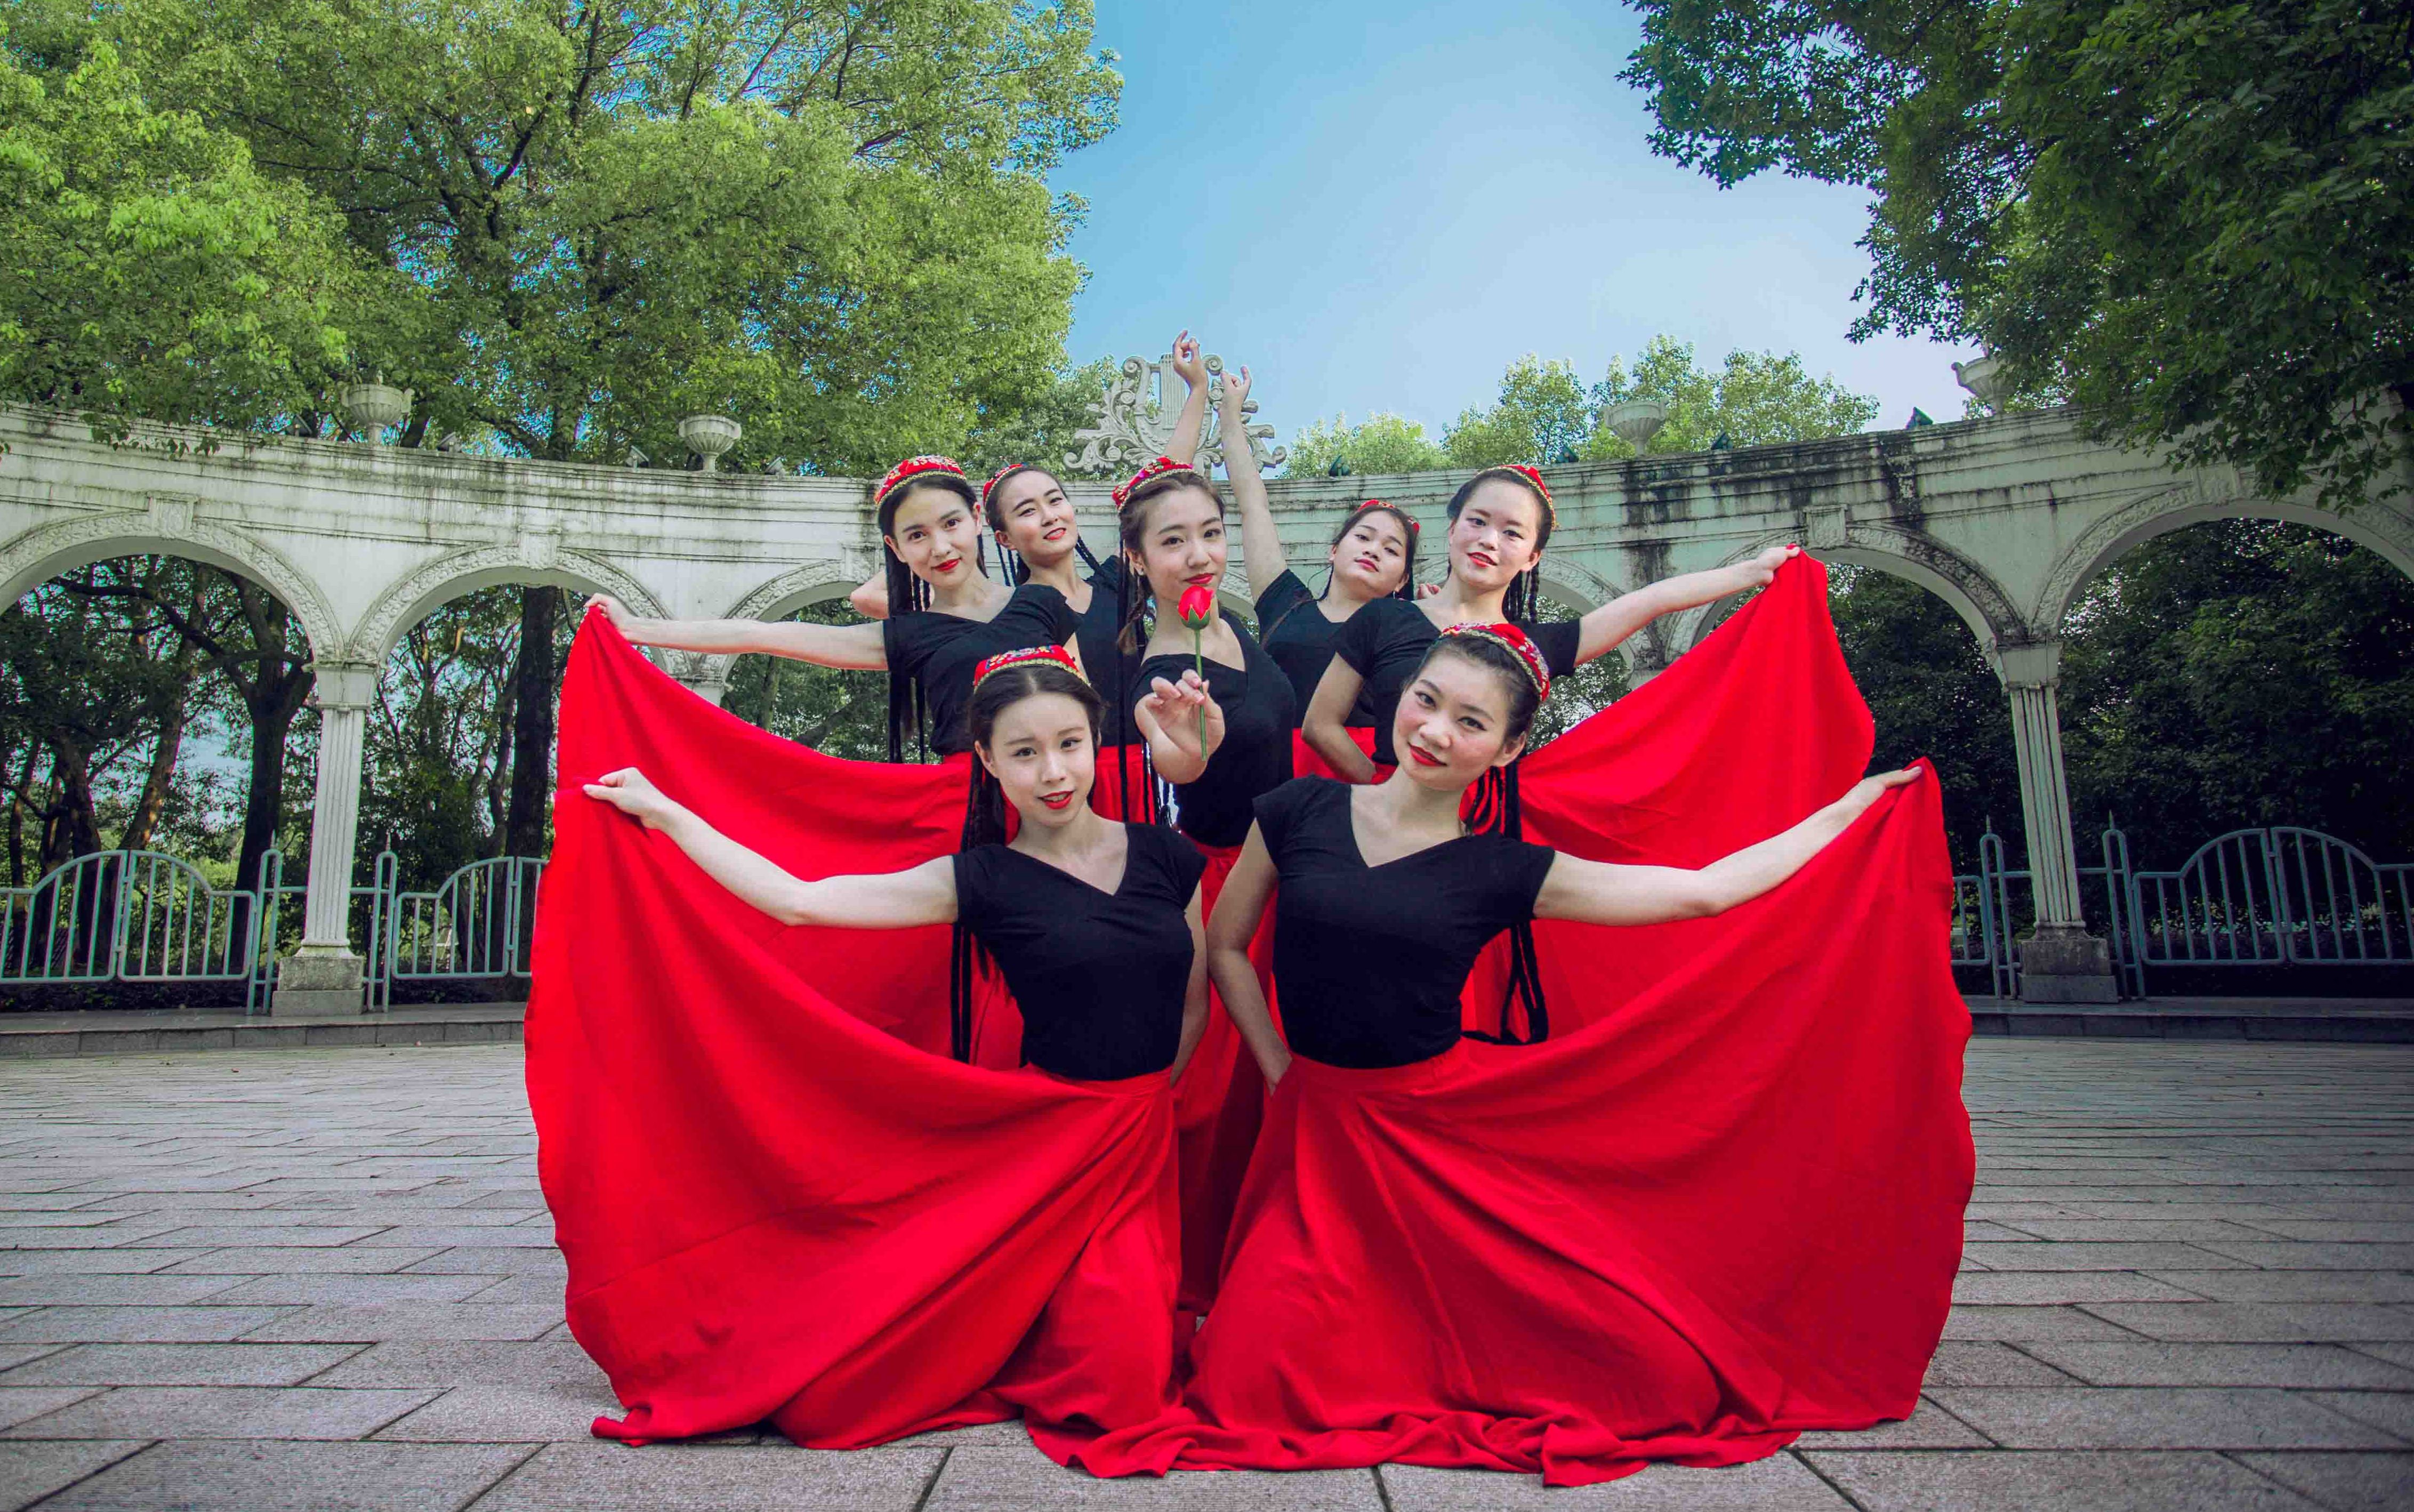 【单色舞蹈】中国舞《掀起你的盖头来》 红衣美眉~(≧▽≦)/~啦啦啦